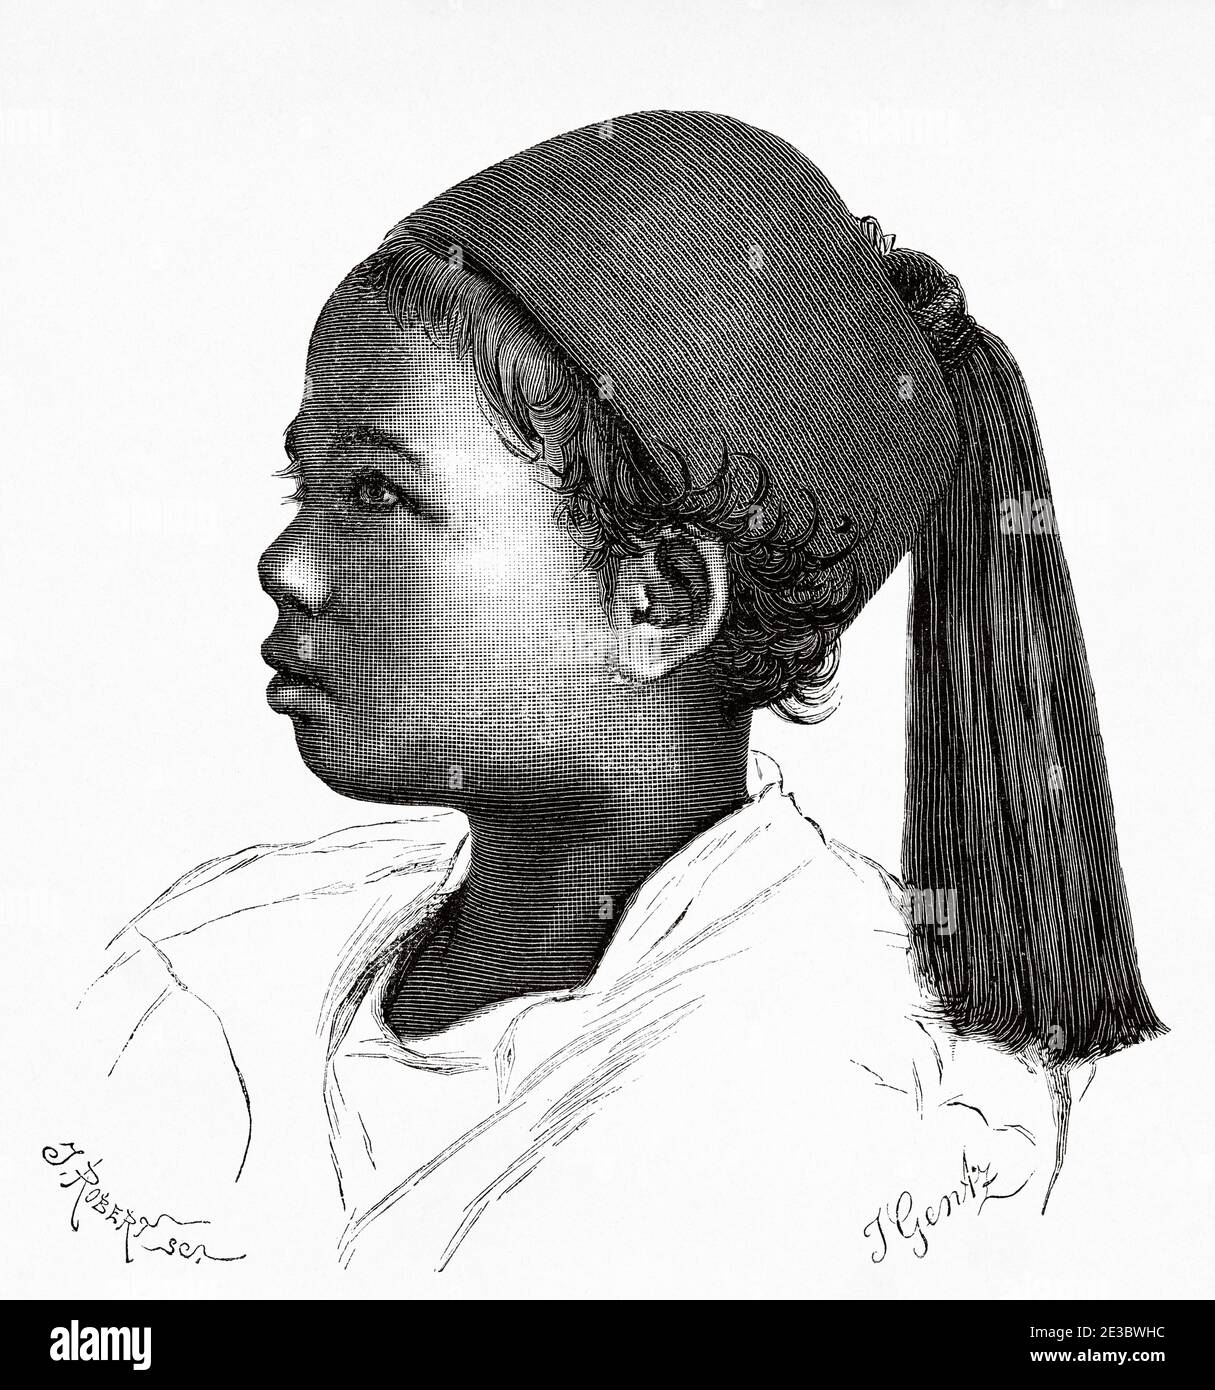 Niño egipcio del siglo XIX con gorra árabe, Antiguo Egipto. Antiguo siglo XIX grabado ilustración, el Mundo ilustrado 1880 Foto de stock